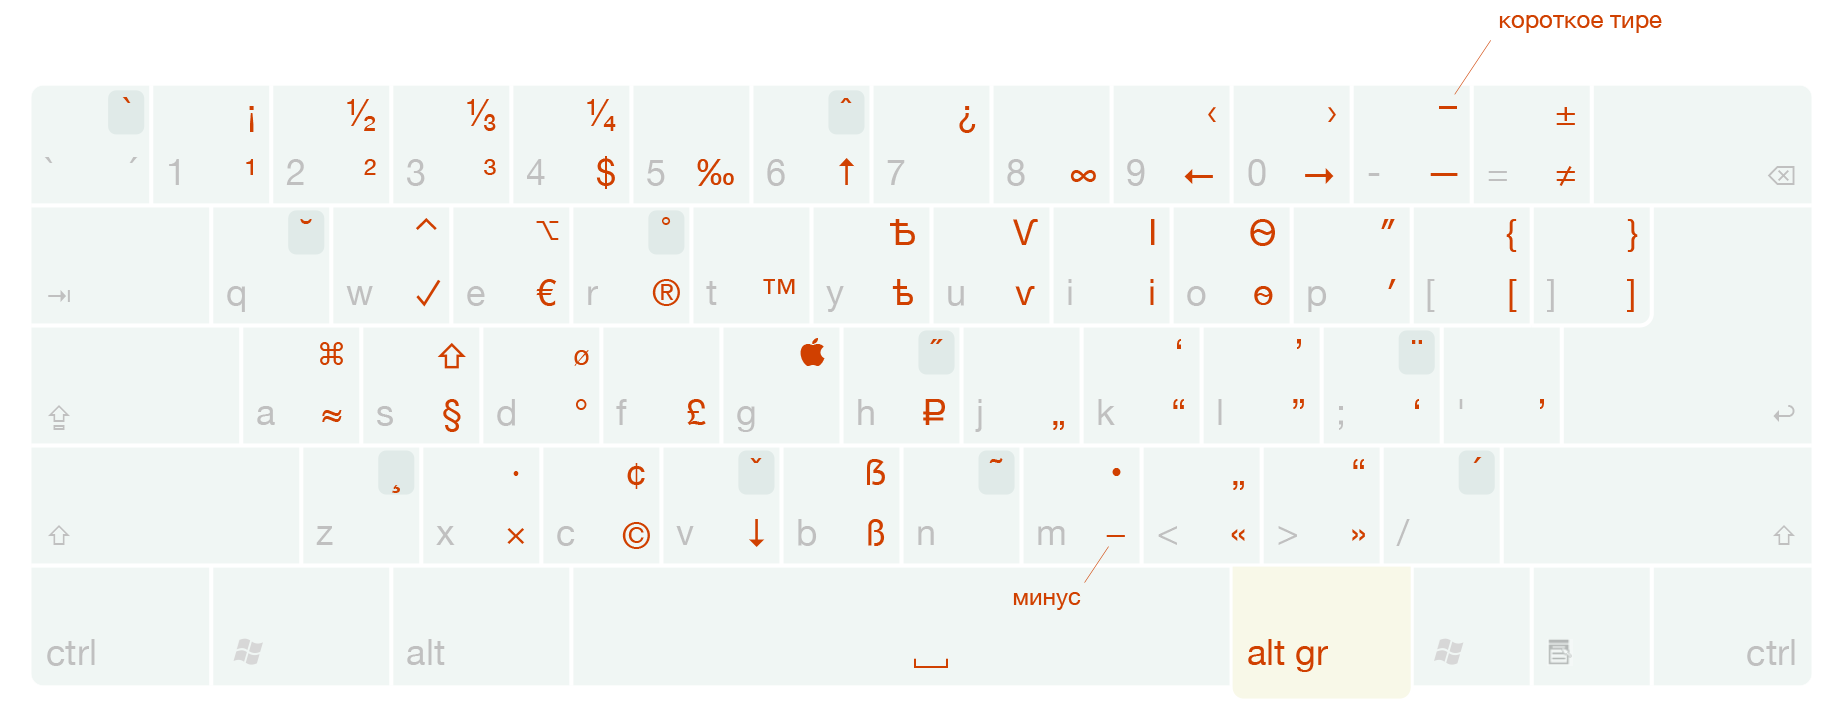 Типографская раскладка клавиатуры для Виндоуса (Windows, PC)